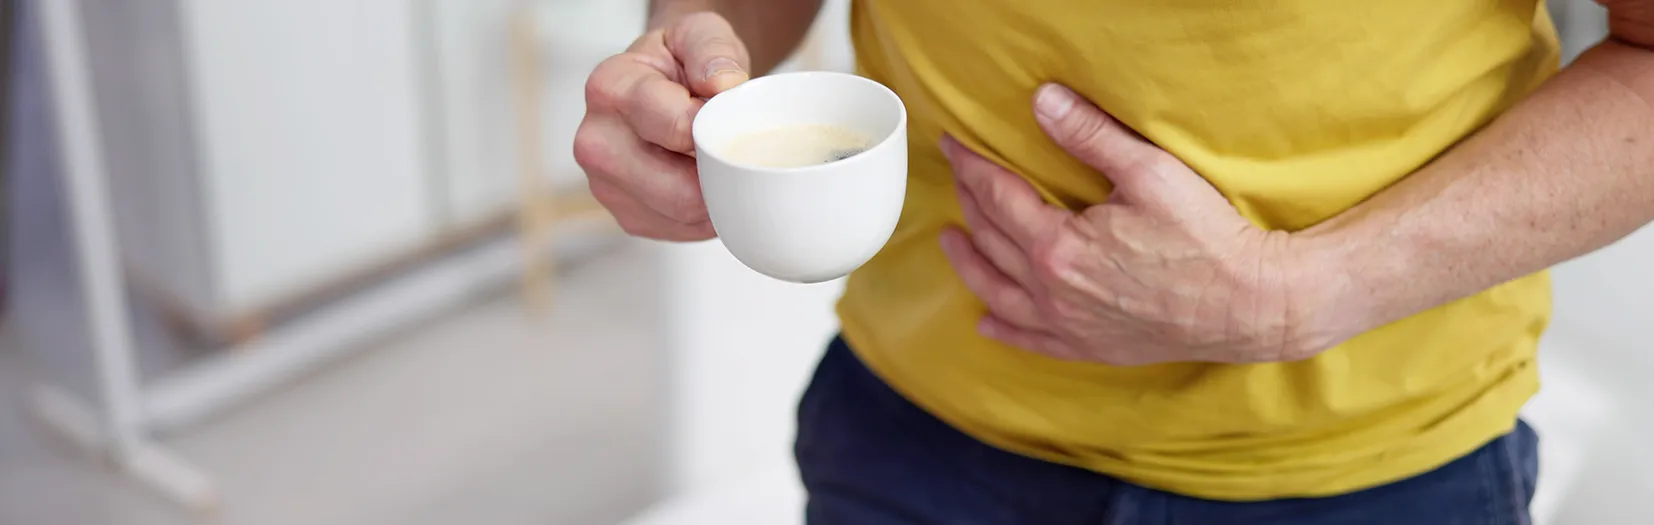 Męczy Cię zgaga po kawie? Odczuwasz pieczenie w żołądku? Sprawdź, dlaczego czasami po kawie boli brzuch. Mężczyzna w żółtej koszulce łapie się za brzuch po wypiciu filiżanki kawy.